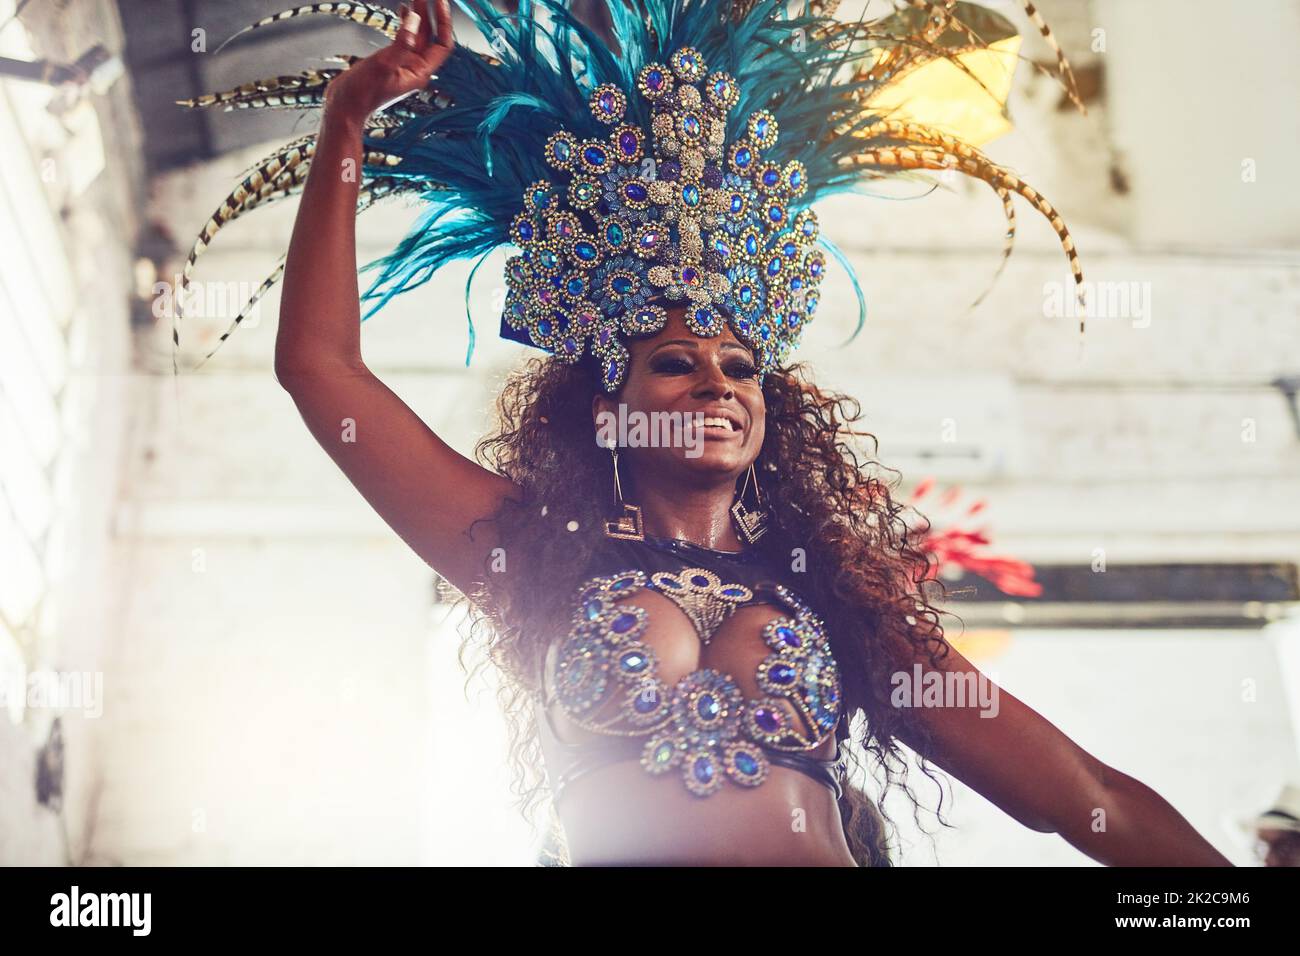 Sa beauté enchante tout. Photo d'un danseur de samba en train de se faire un carnaval. Banque D'Images